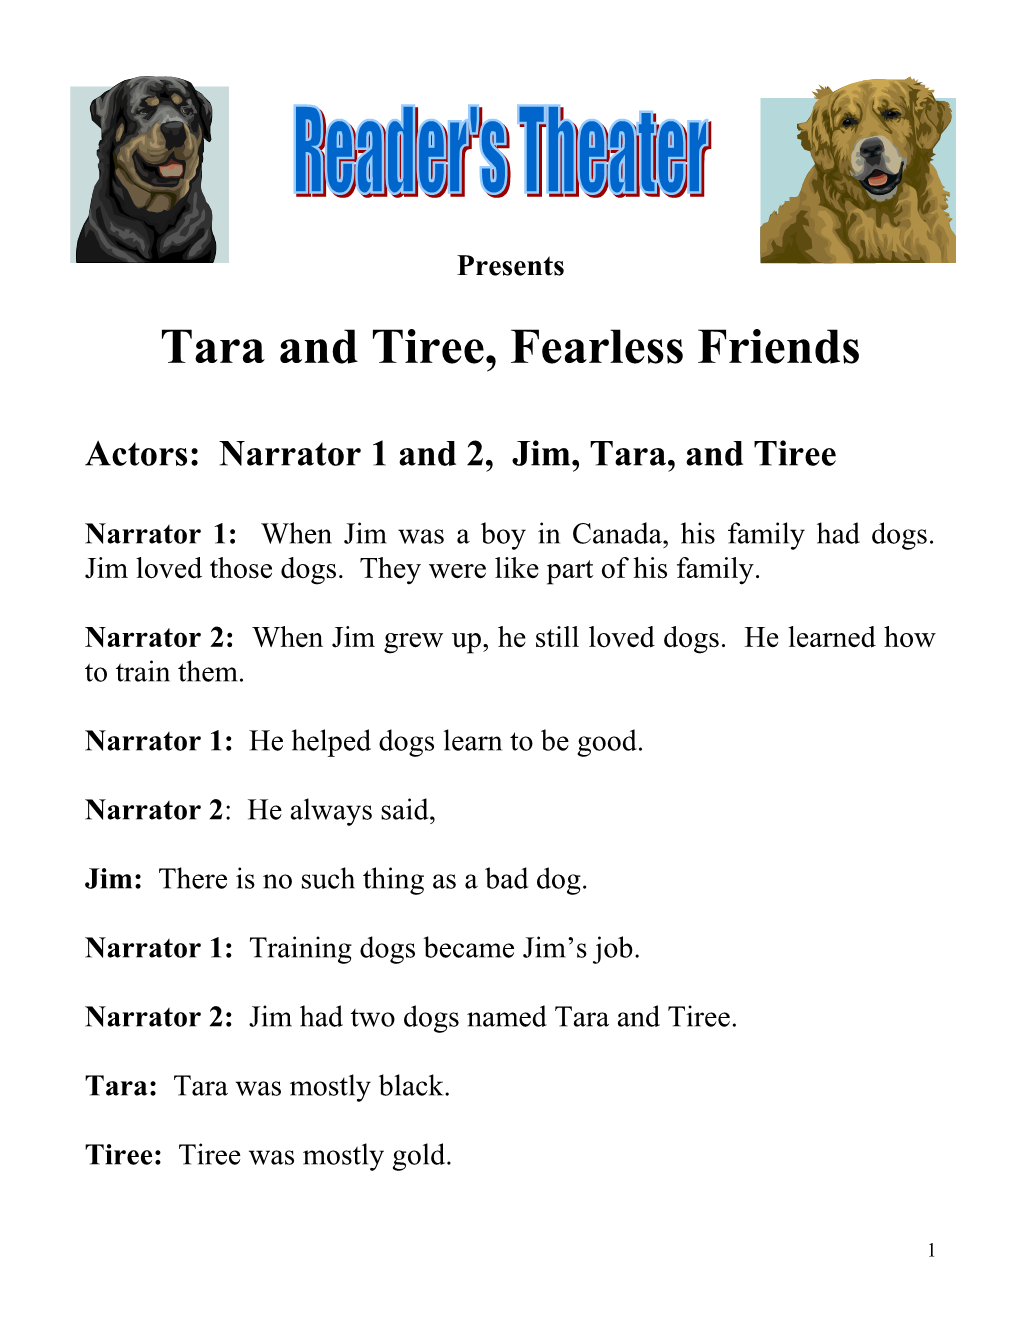 Actors: Narrator 1 and 2, Jim, Tara, and Tiree